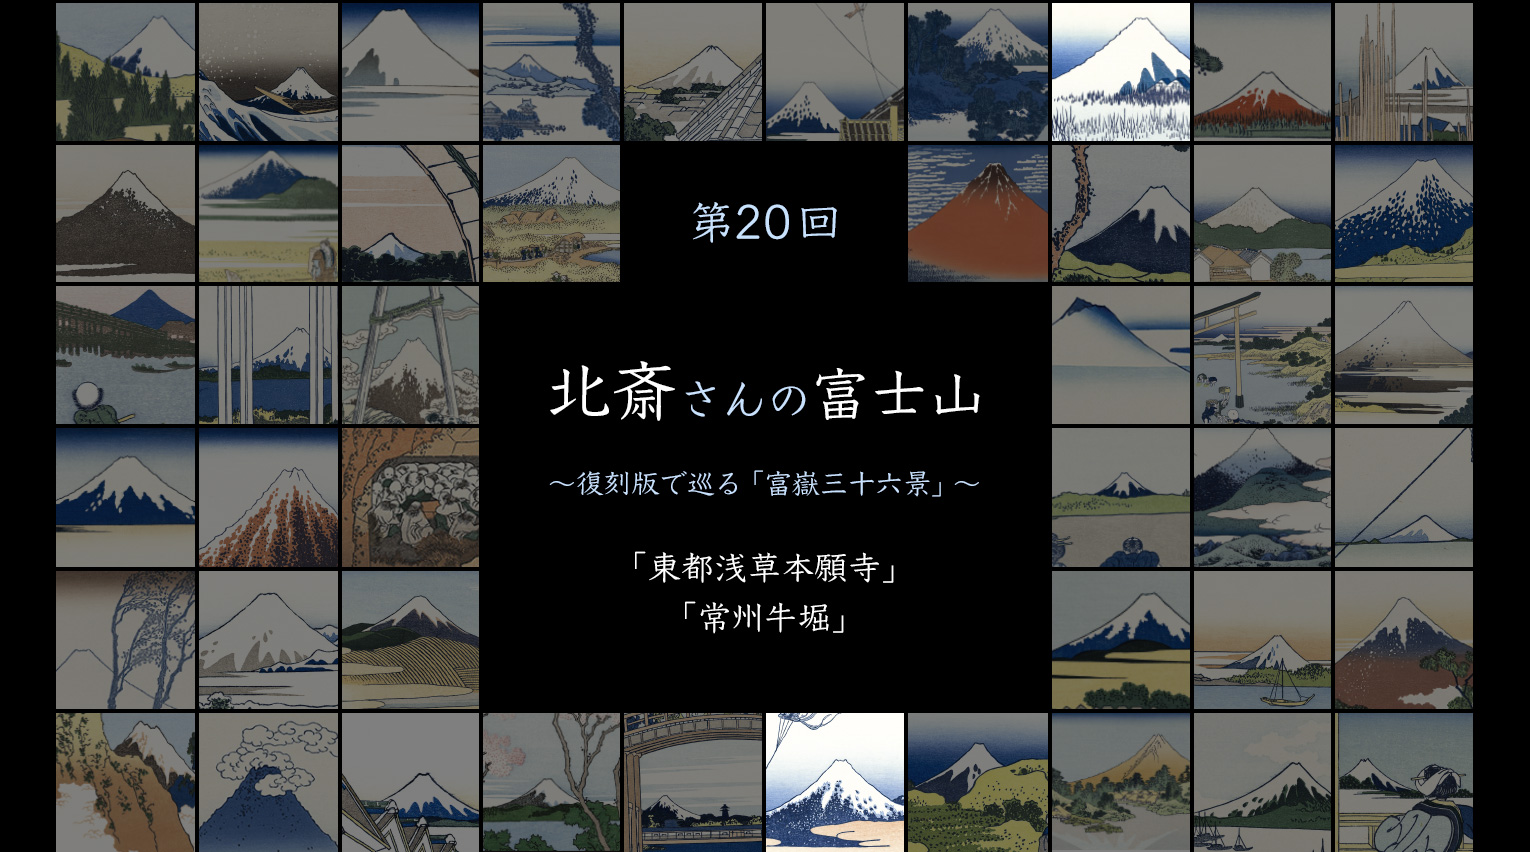 北斎さんの富士山 〜復刻版で見る「富嶽三十六景」〜 (20)【PR 